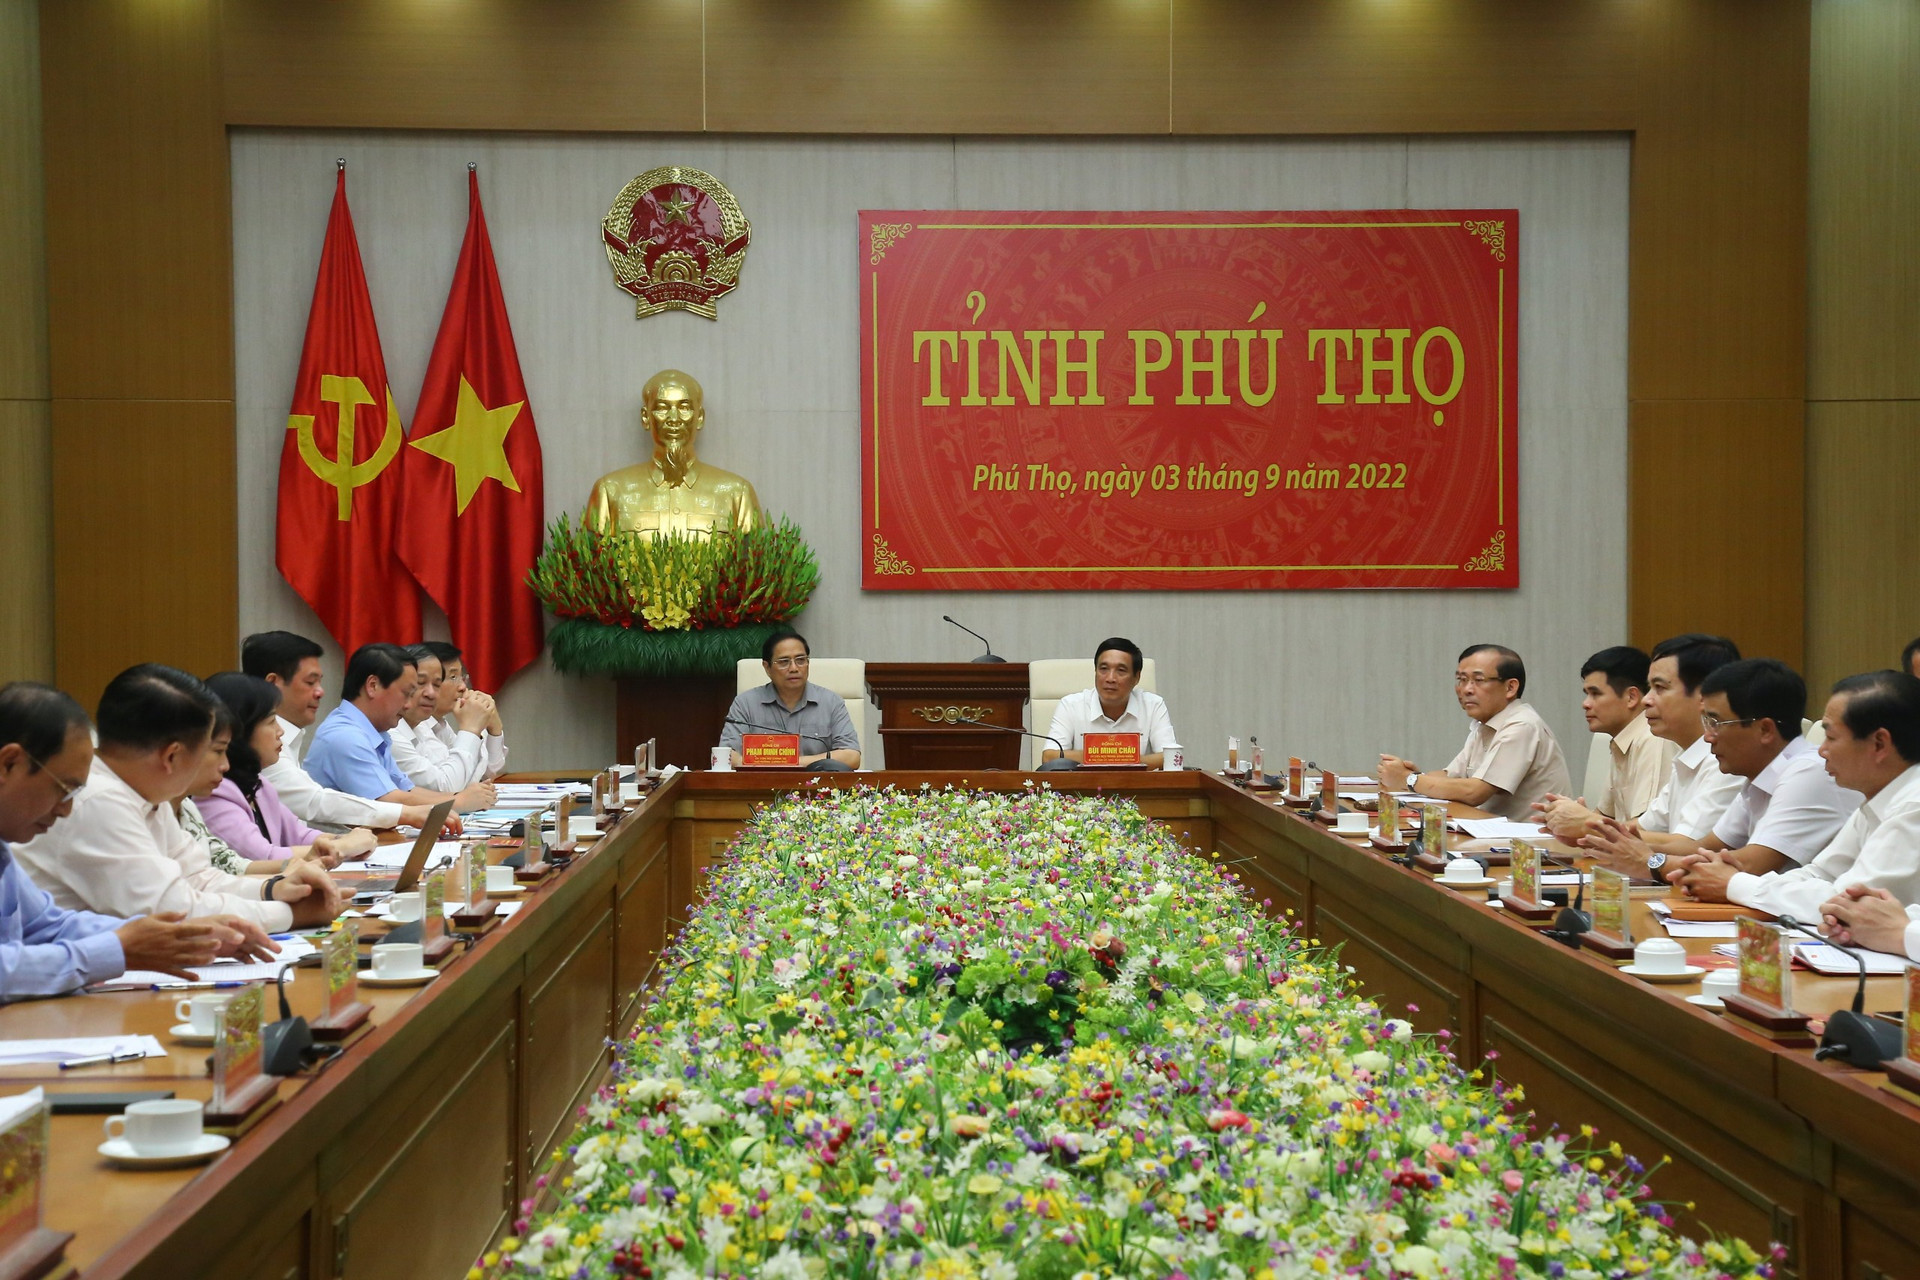 Tiếp đến Thủ tướng đã dành gần 5 tiếng đồng hồ để làm việc  với Ban Thường vụ Tỉnh uỷ Phú Thọ xoay quanh  vấn đề phát triển kinh tế - xã hội của tỉnh Phú Thọ.